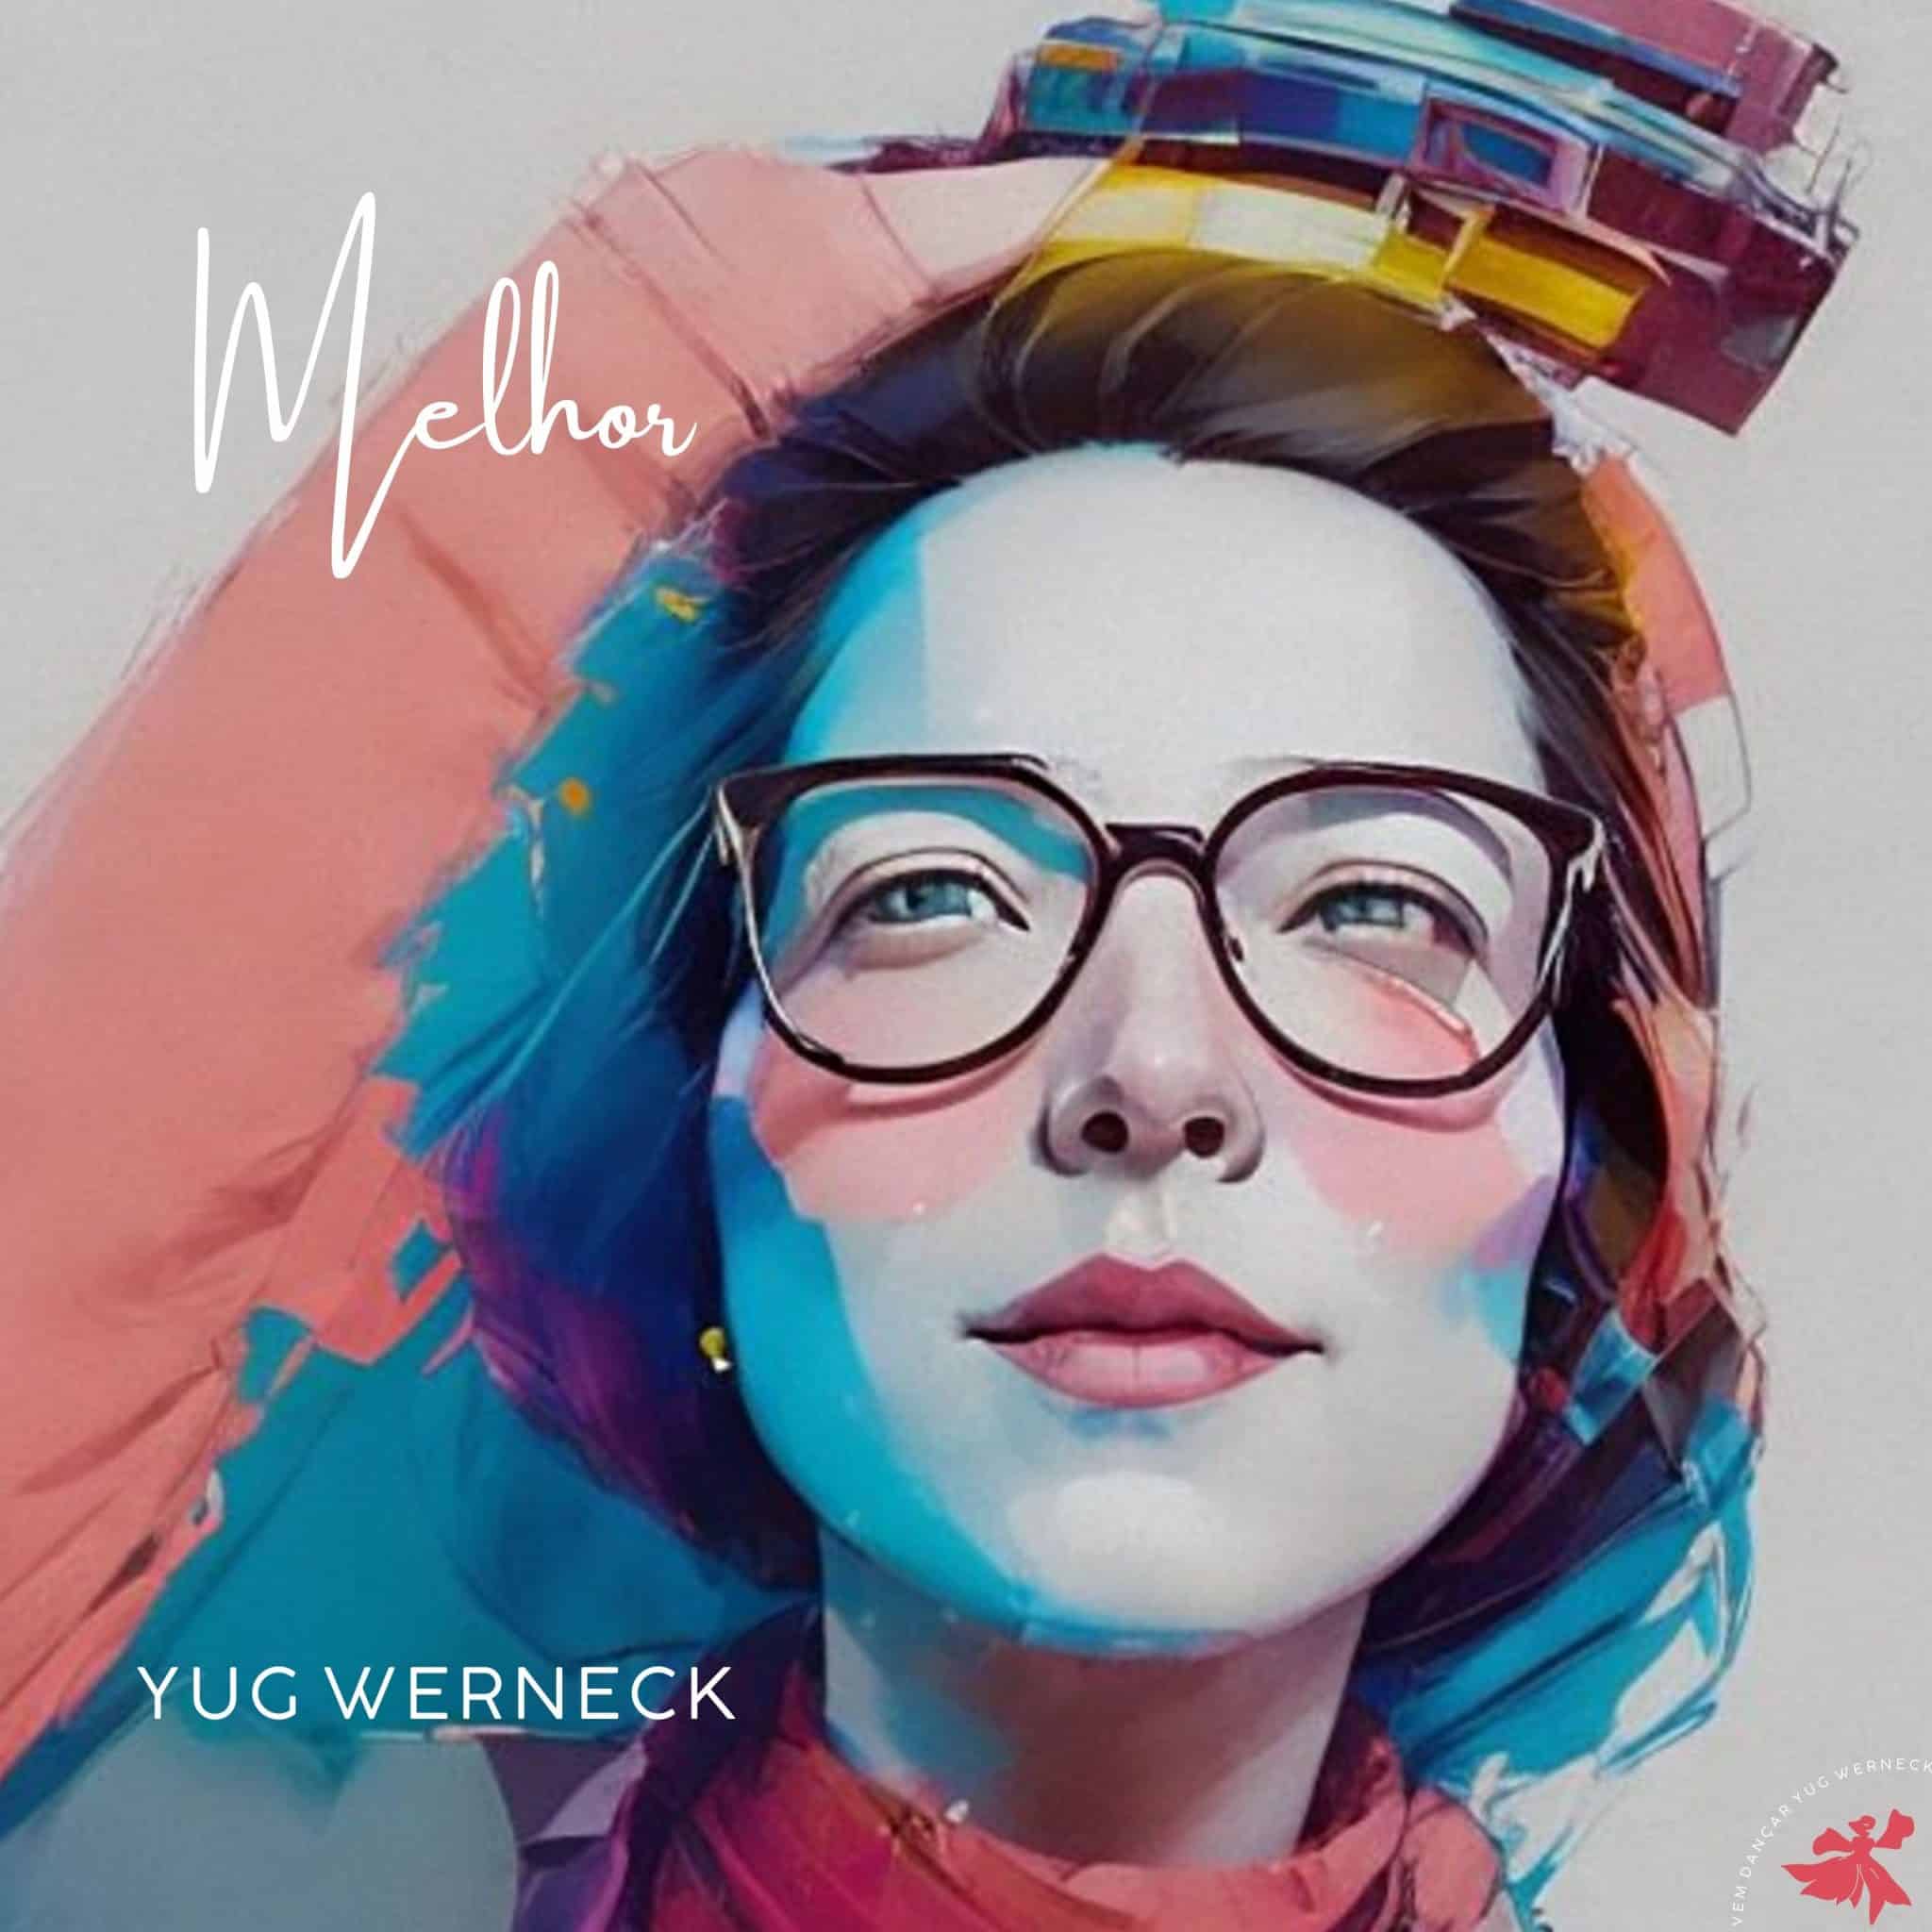 revistaprosaversoearte.com - Yug Werneck celebra a chegada da primavera no single 'Melhor'